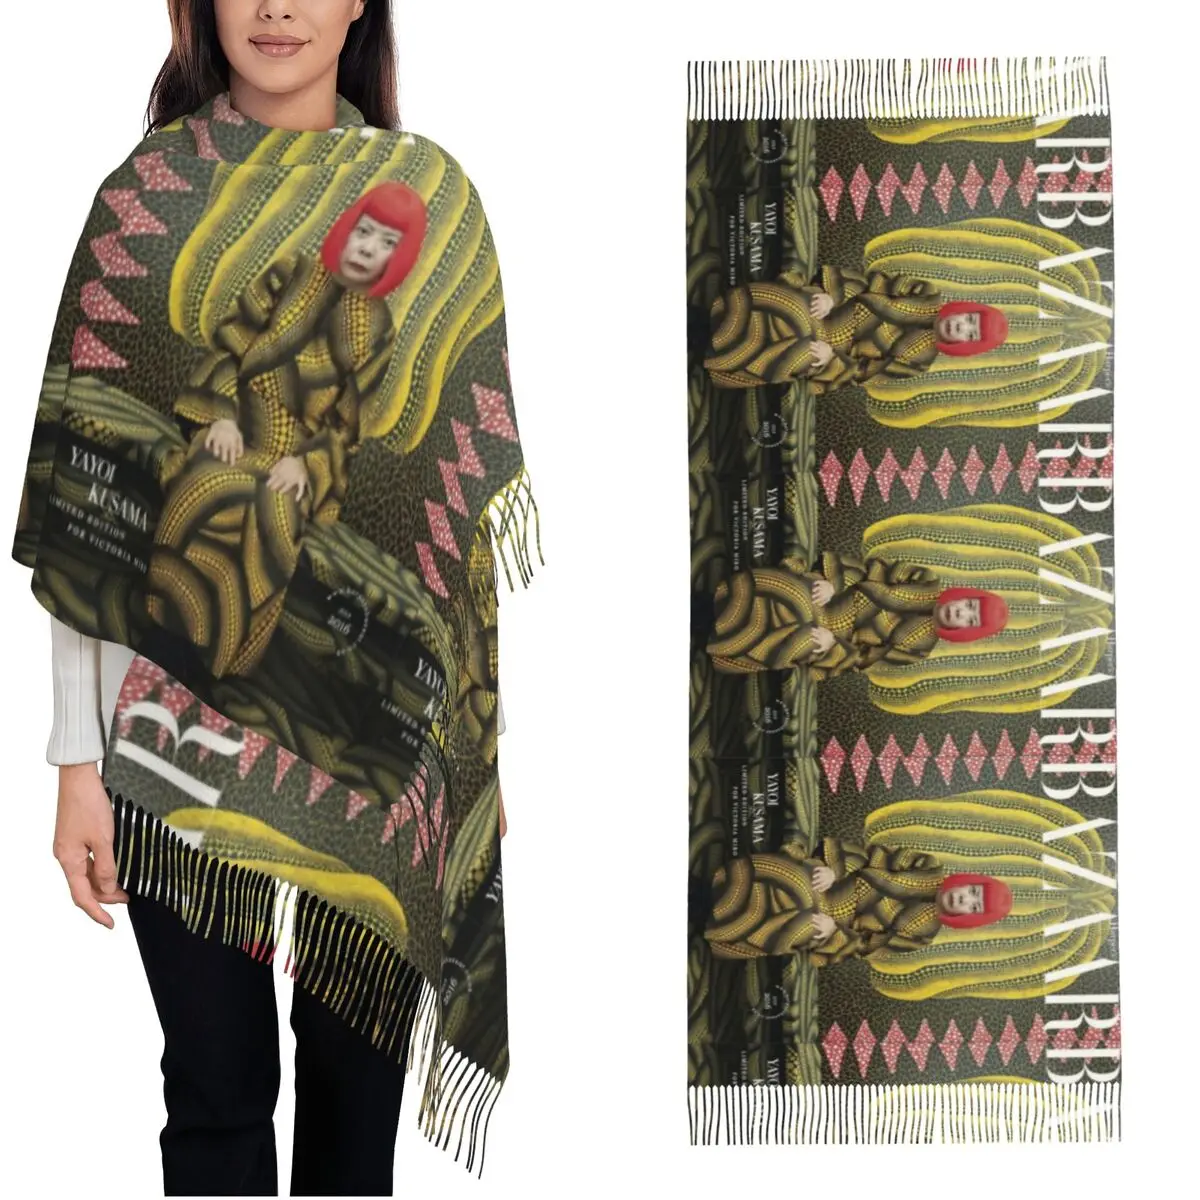 

Шарф Victoria Mico Yayoi Kusama для женщин, теплые зимние шали и накидка, винтажная японская художественная длинная шаль, шарф, повседневная одежда